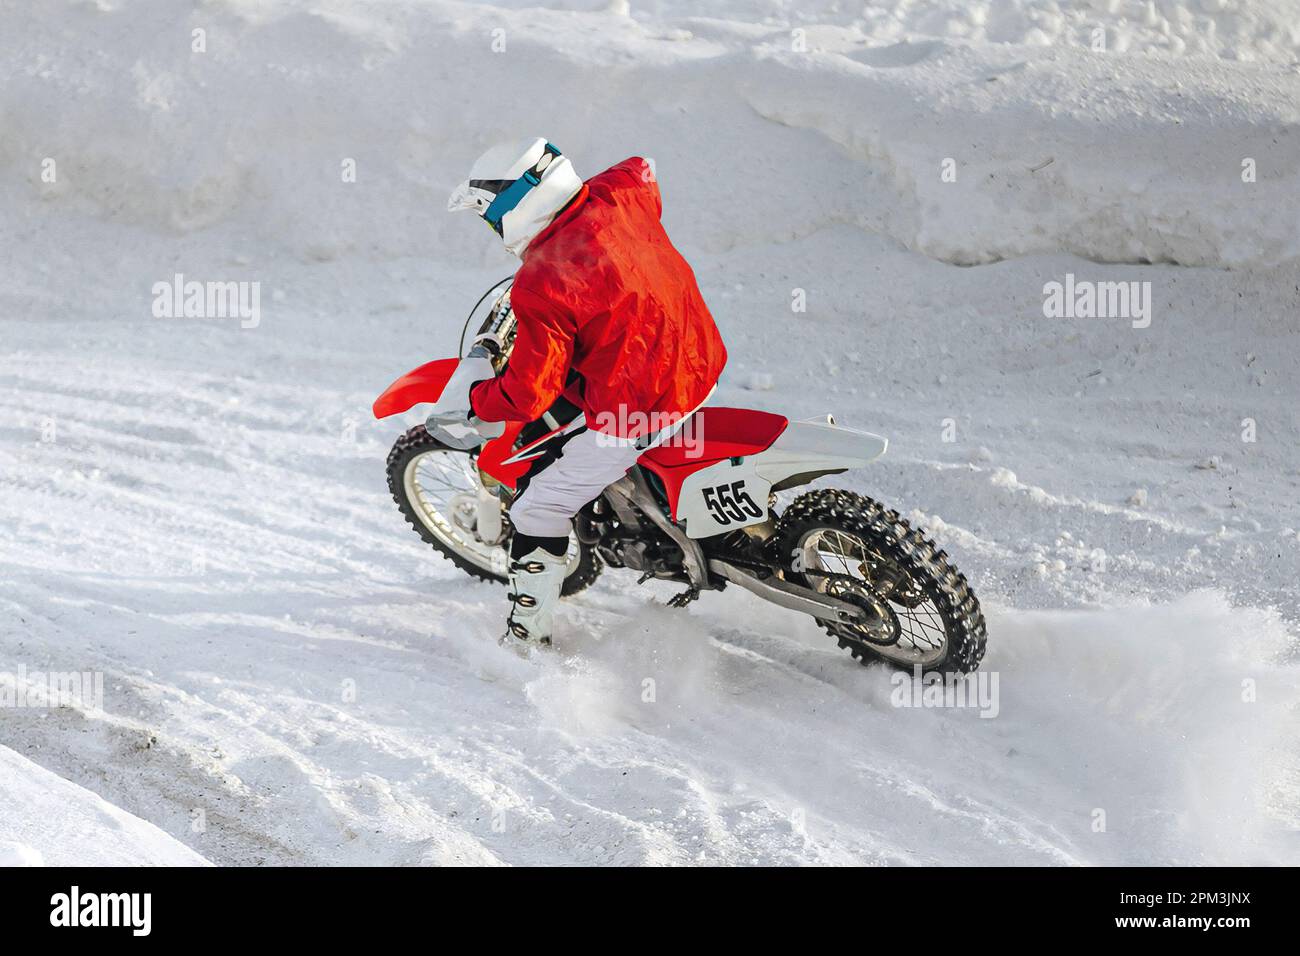 motocross-Fahrer, der im Winter Motorradrennen in scharfen Kurven fährt, Schnee spritzt unter dem Hinterrad Stockfoto